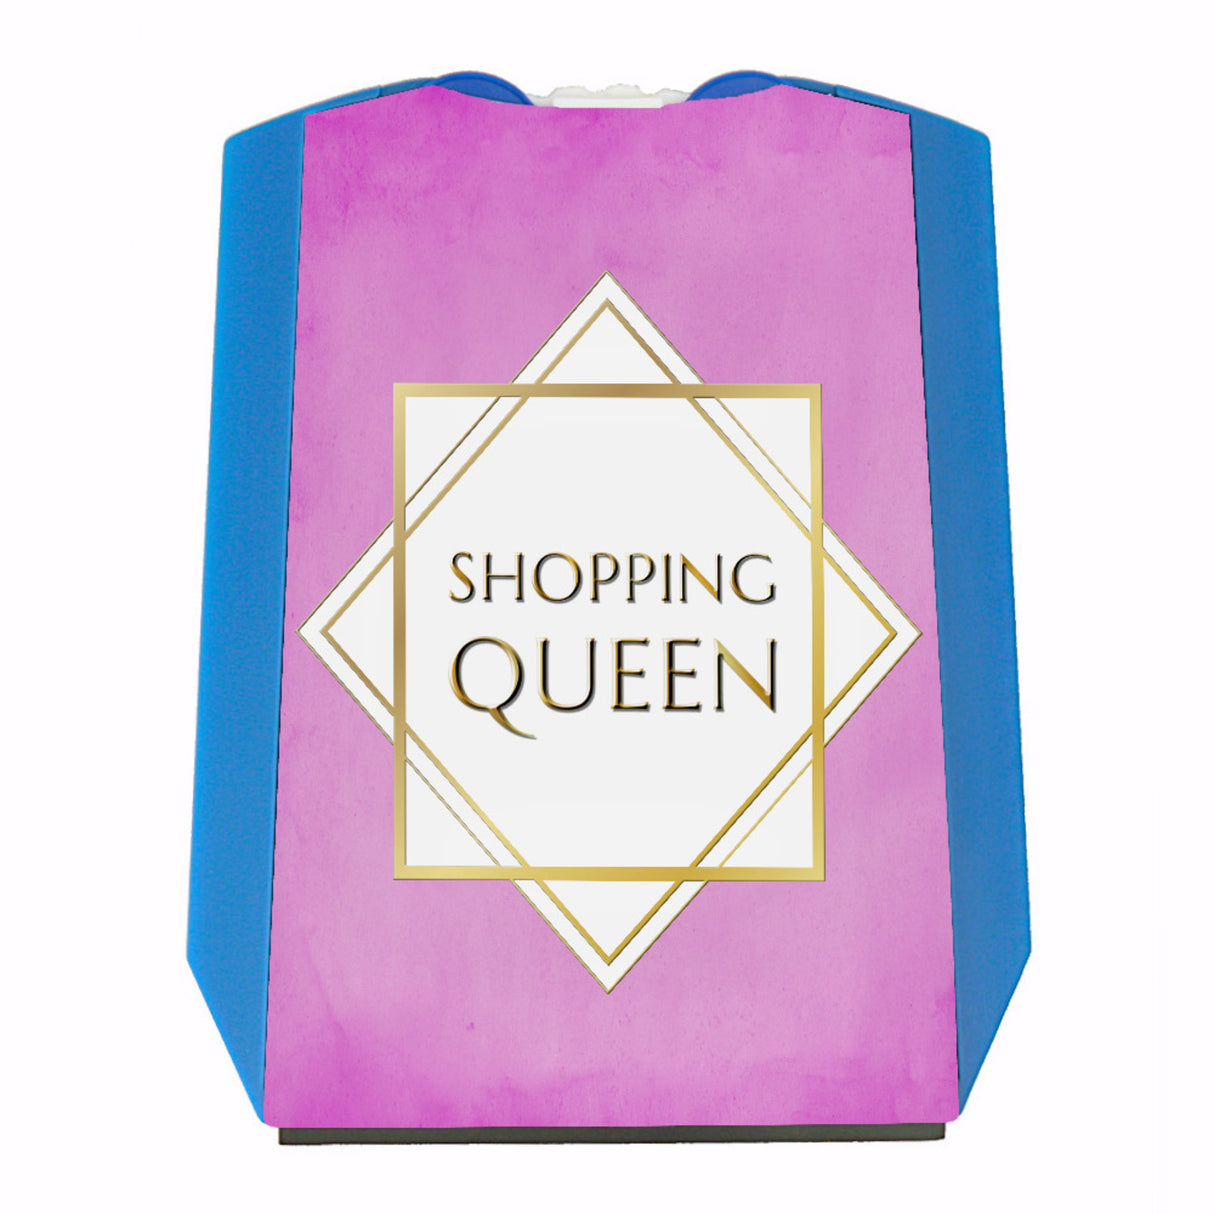 Parkscheibe Shopping-Queen: Jetzt kaufen und Shopping-Queen werden! –